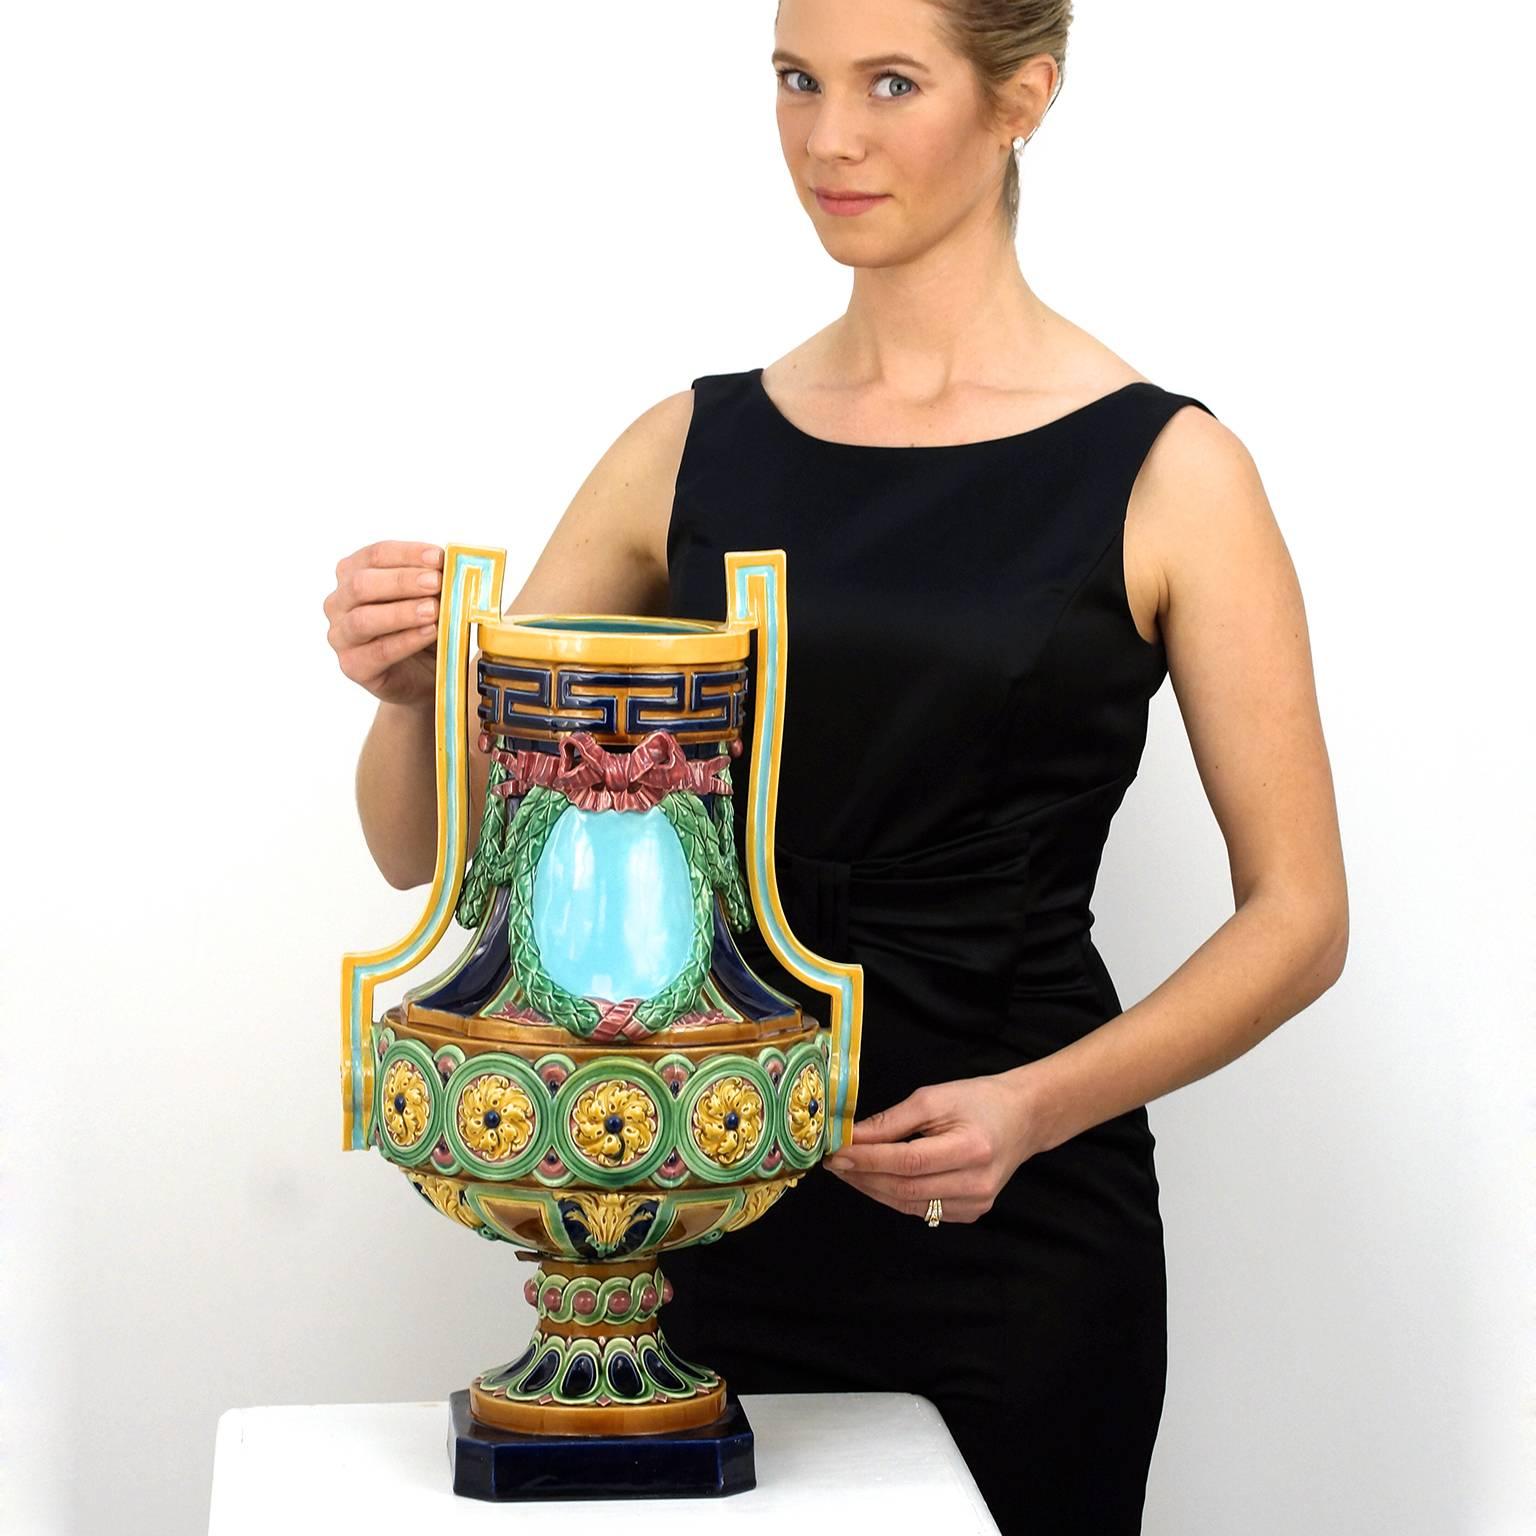 Um 1870, von Minton, England. Diese monumentale Vase ist ein prächtiges Beispiel für englisches Porzellan und ein Meisterwerk der viktorianischen Ästhetik. Majolika von Minton ist bekannt für seine zarten Farben und geschmackvollen Motive. Dieses